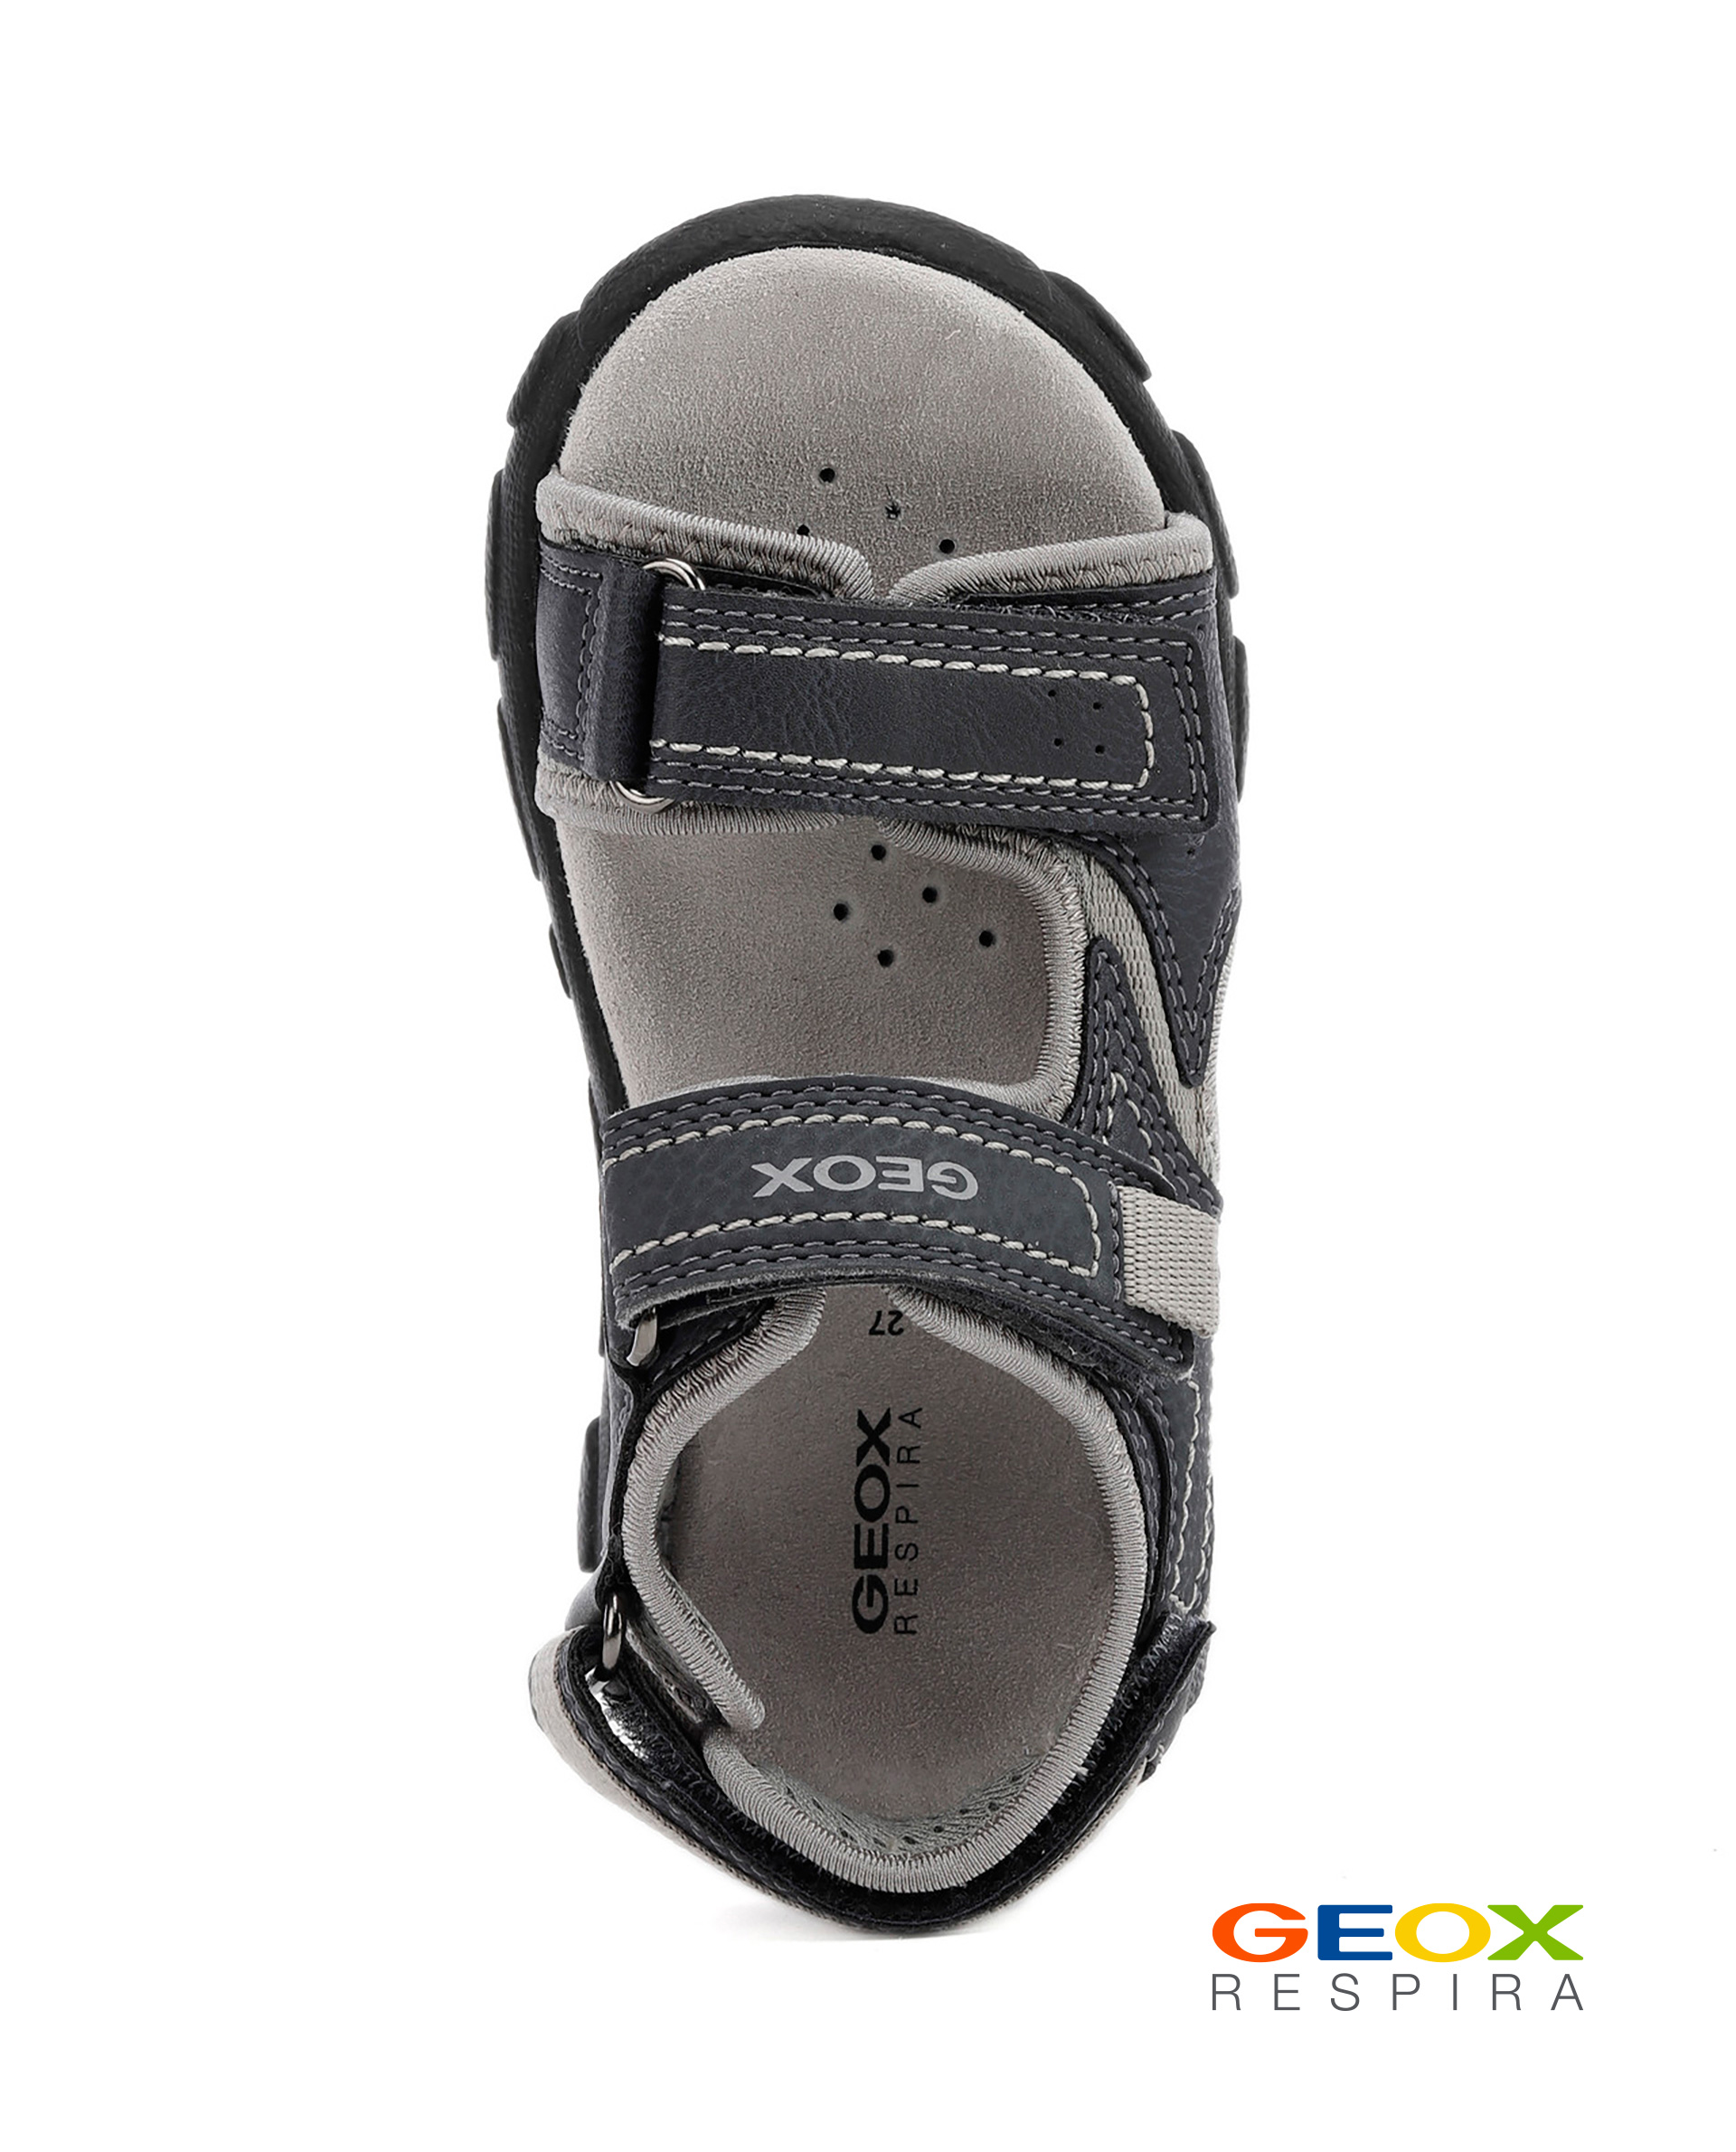 Серые сандалии Geox для мальчика J0224A0MECEC0661, размер 38, цвет серый - фото 4